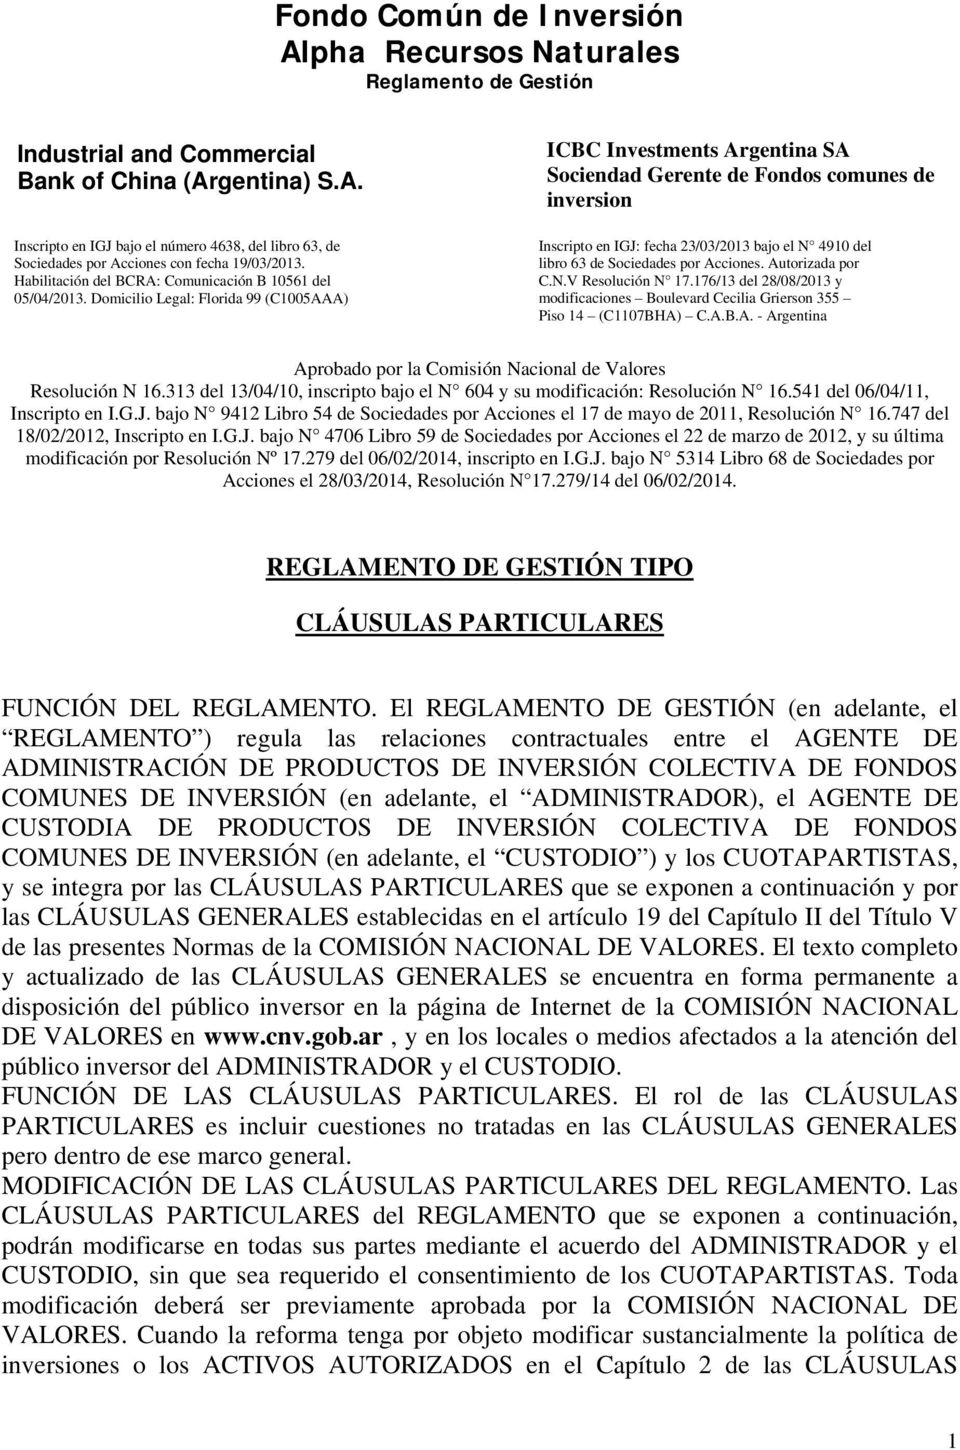 Domicilio Legal: Florida 99 (C1005AAA) ICBC Investments Argentina SA Sociendad Gerente de Fondos comunes de inversion Inscripto en IGJ: fecha 23/03/2013 bajo el N 4910 del libro 63 de Sociedades por